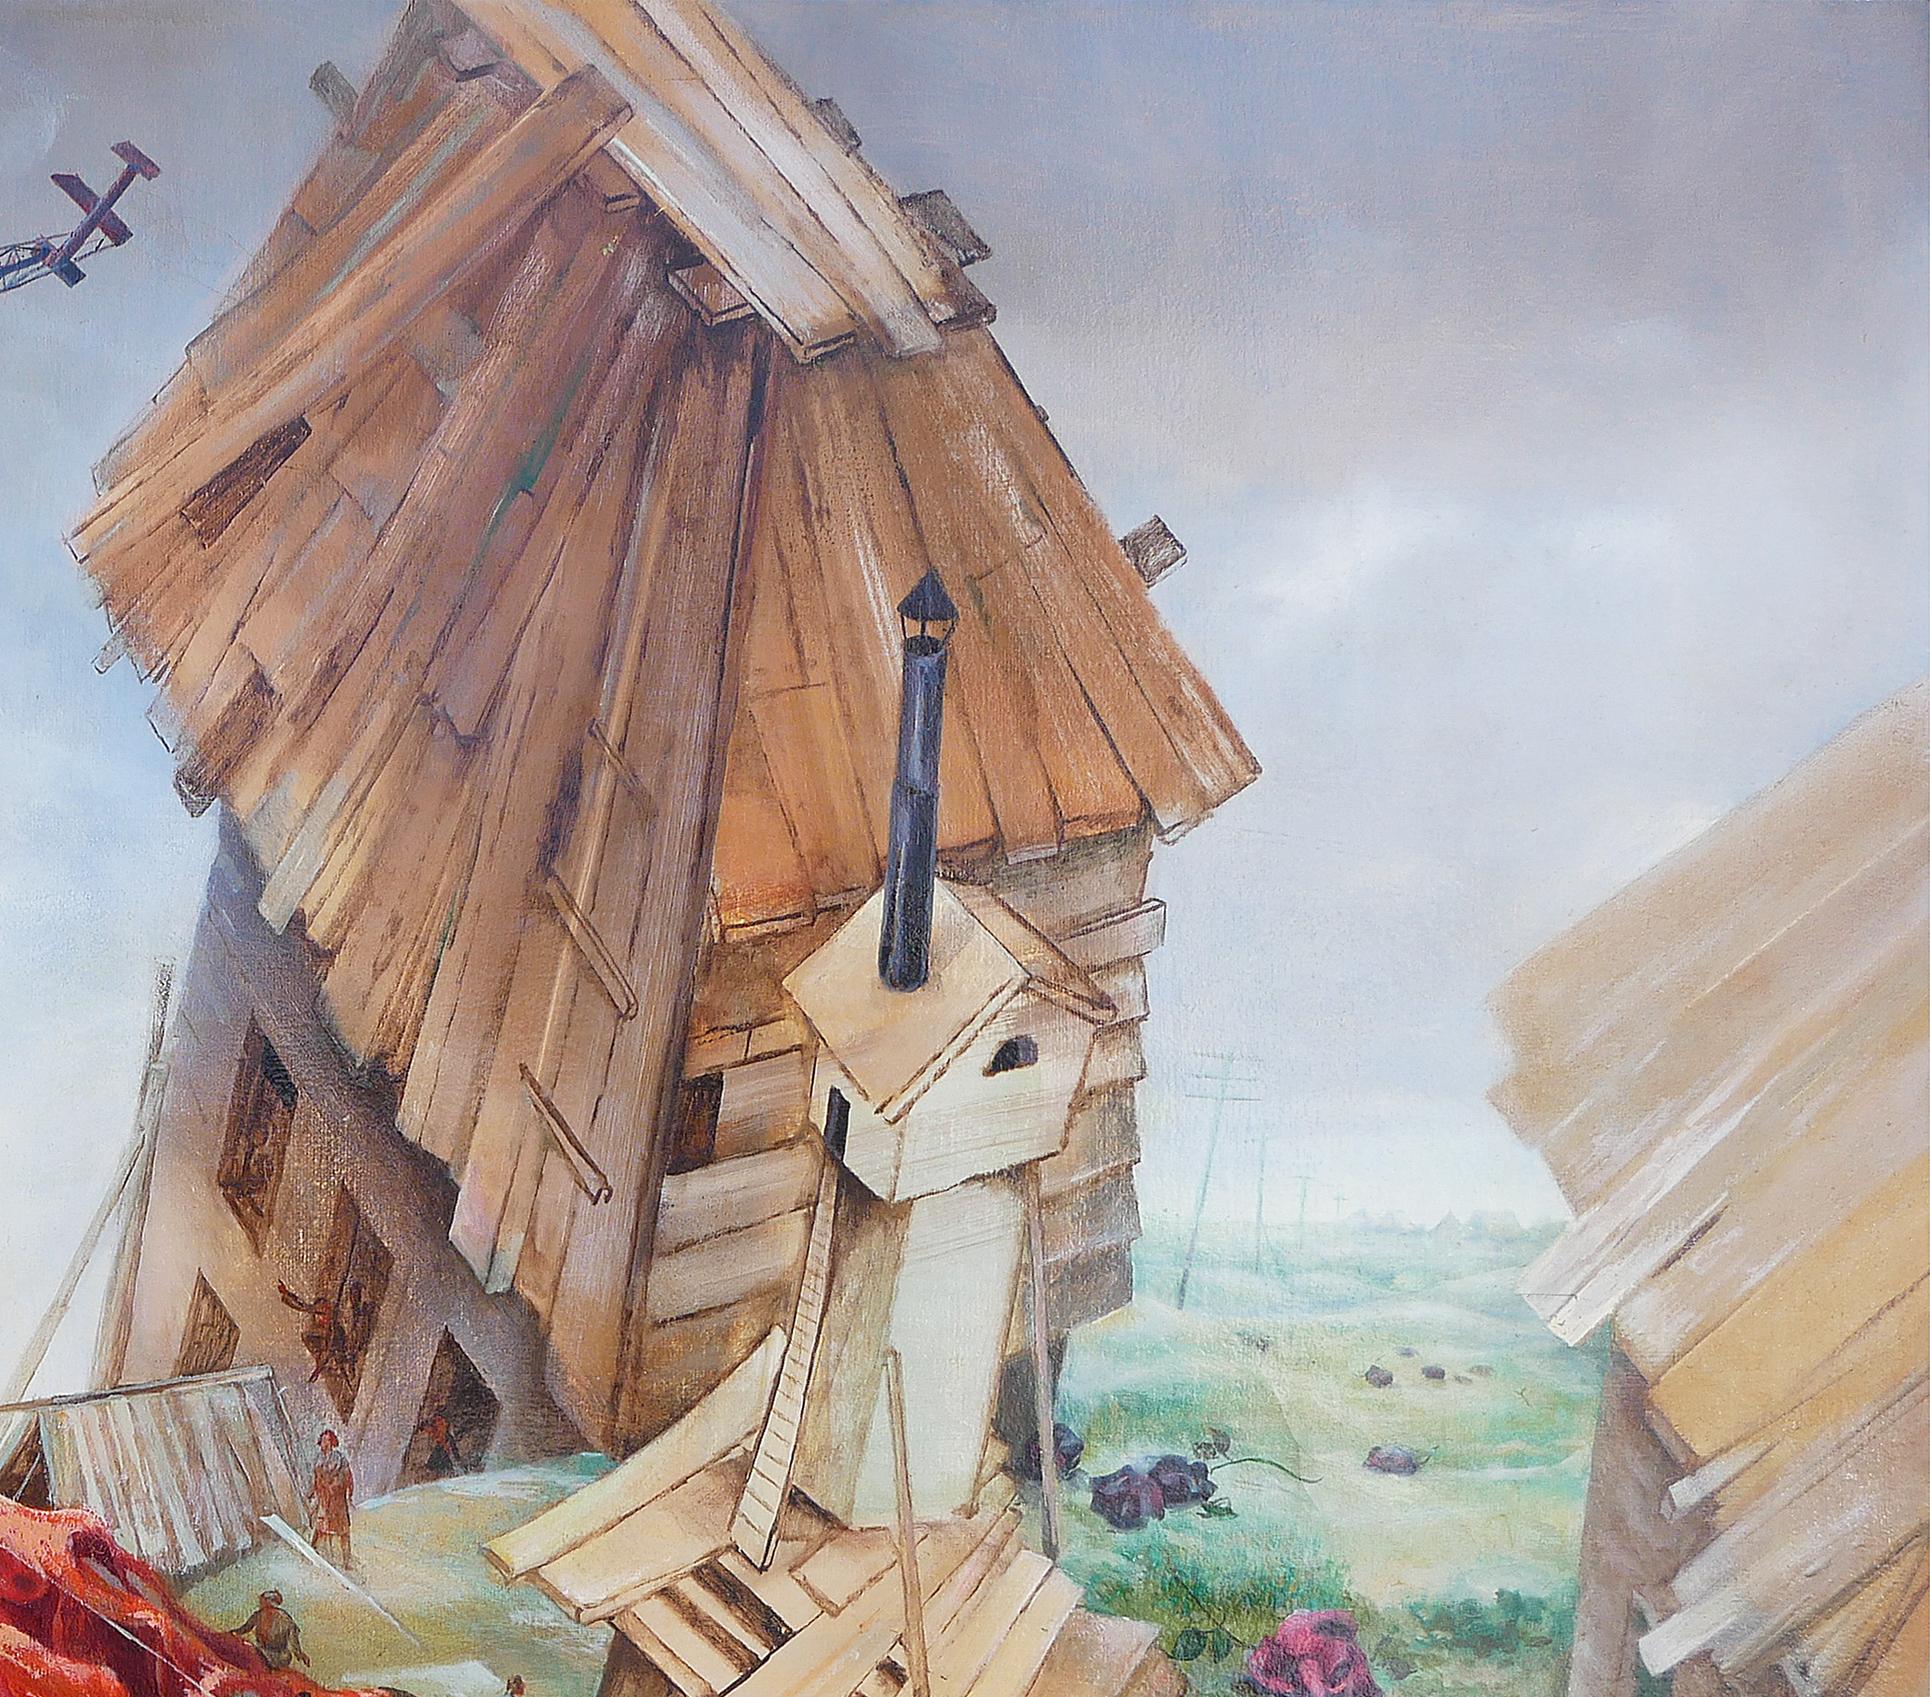 Rote, rosa, blaue und braune abstrakte surrealistische Malerei des sowjetisch-amerikanischen Künstlers Vladimir Ryklin. Das Gemälde stellt ein Dorf dar, das sich nach einer chaotischen Zeit zu rehabilitieren scheint. Die blühenden dunkelrosafarbenen